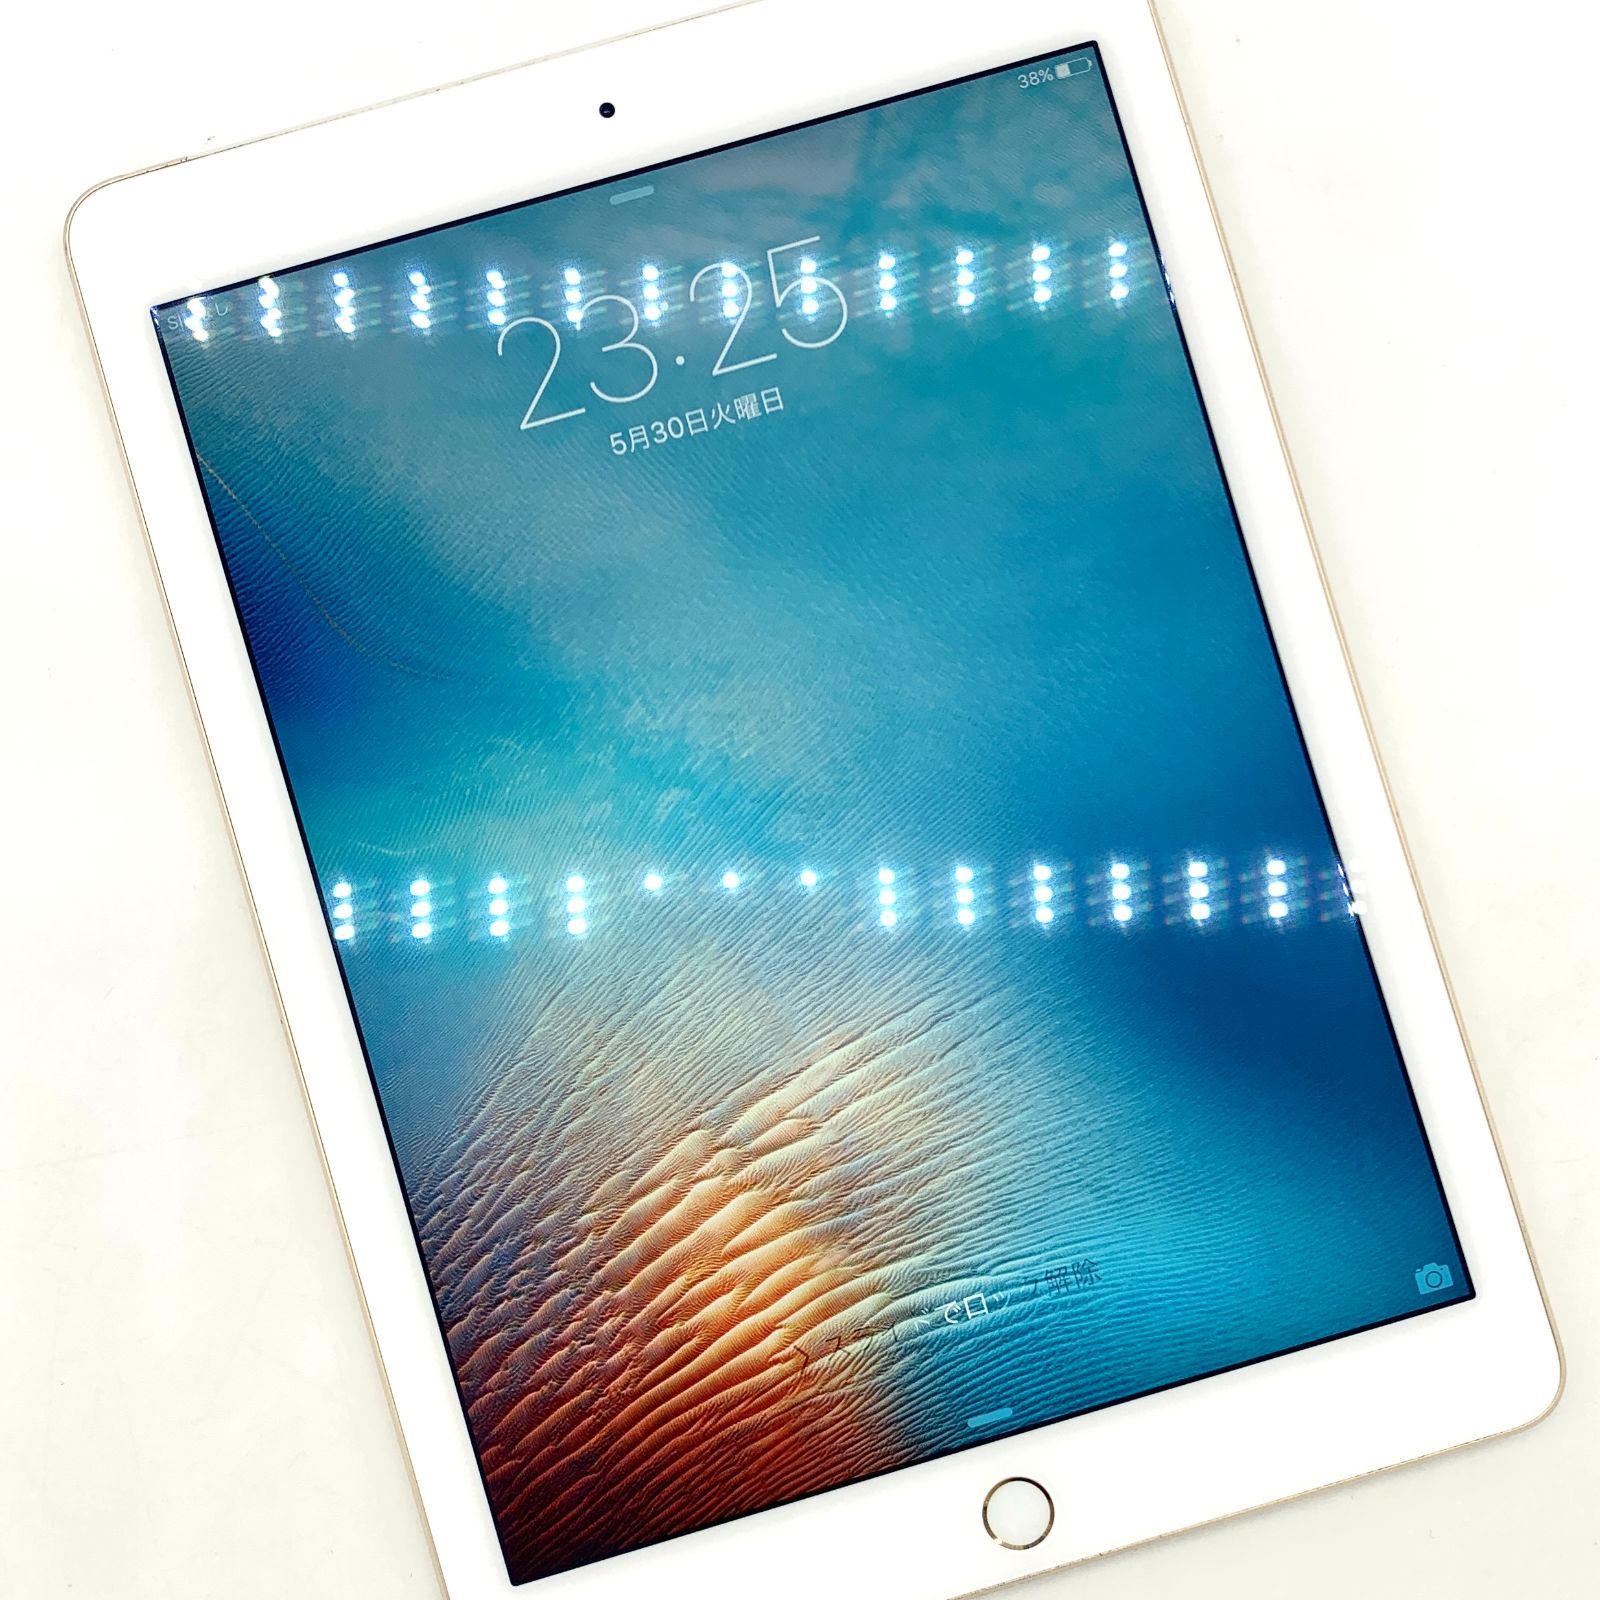 iPad Air2 16GB ソフトバンクセルラーモデル ゴールド